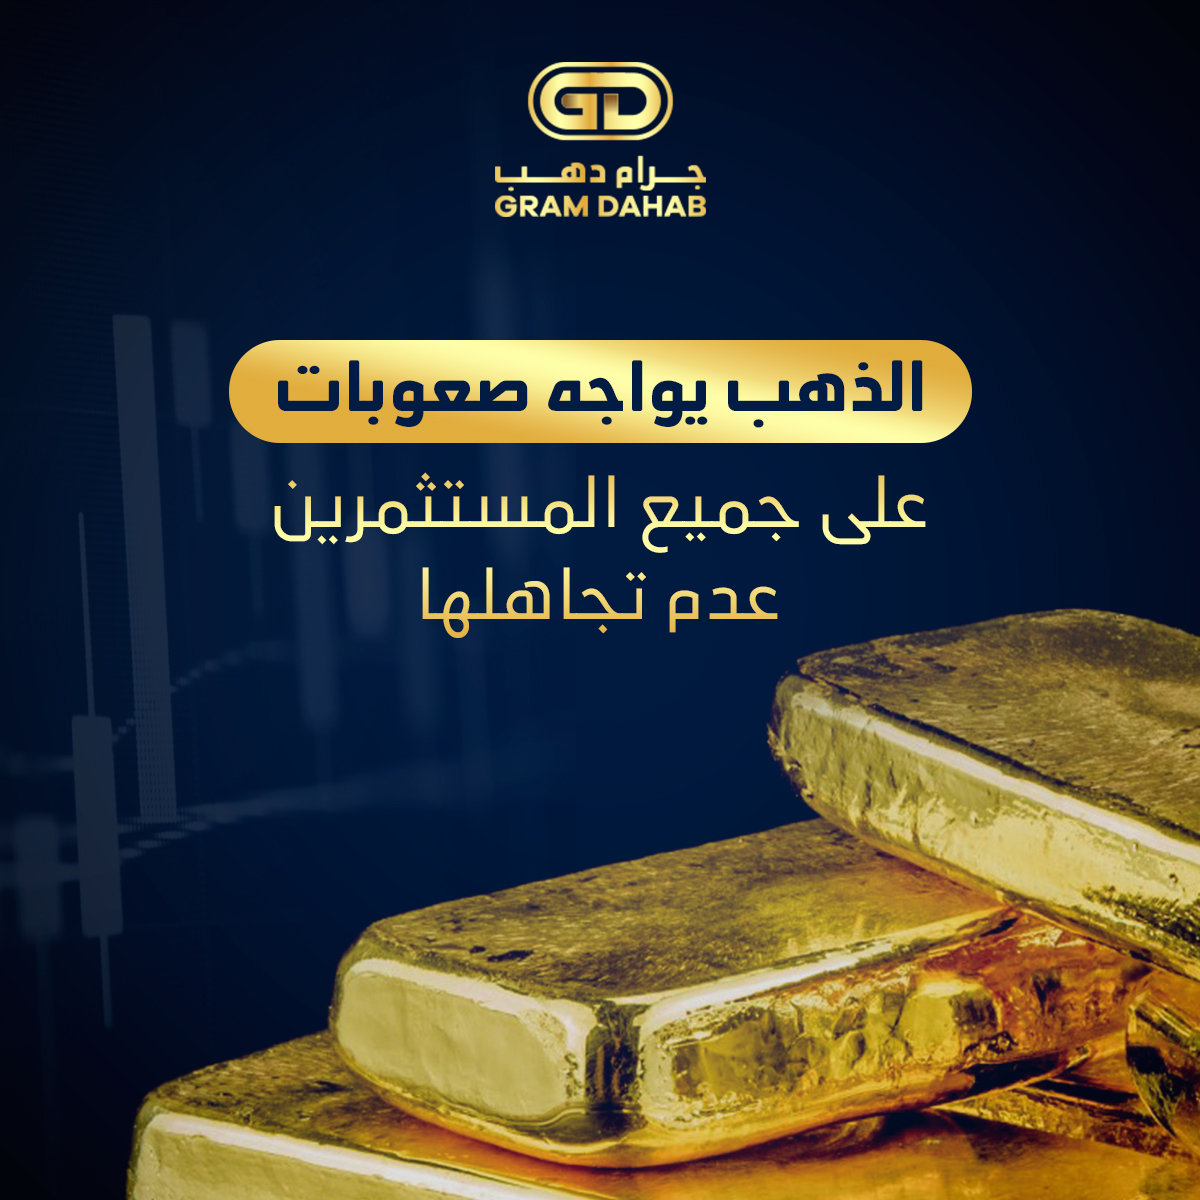 الذهب يواجه صعوبات, على جميع المستثمرين عدم تجاهلها